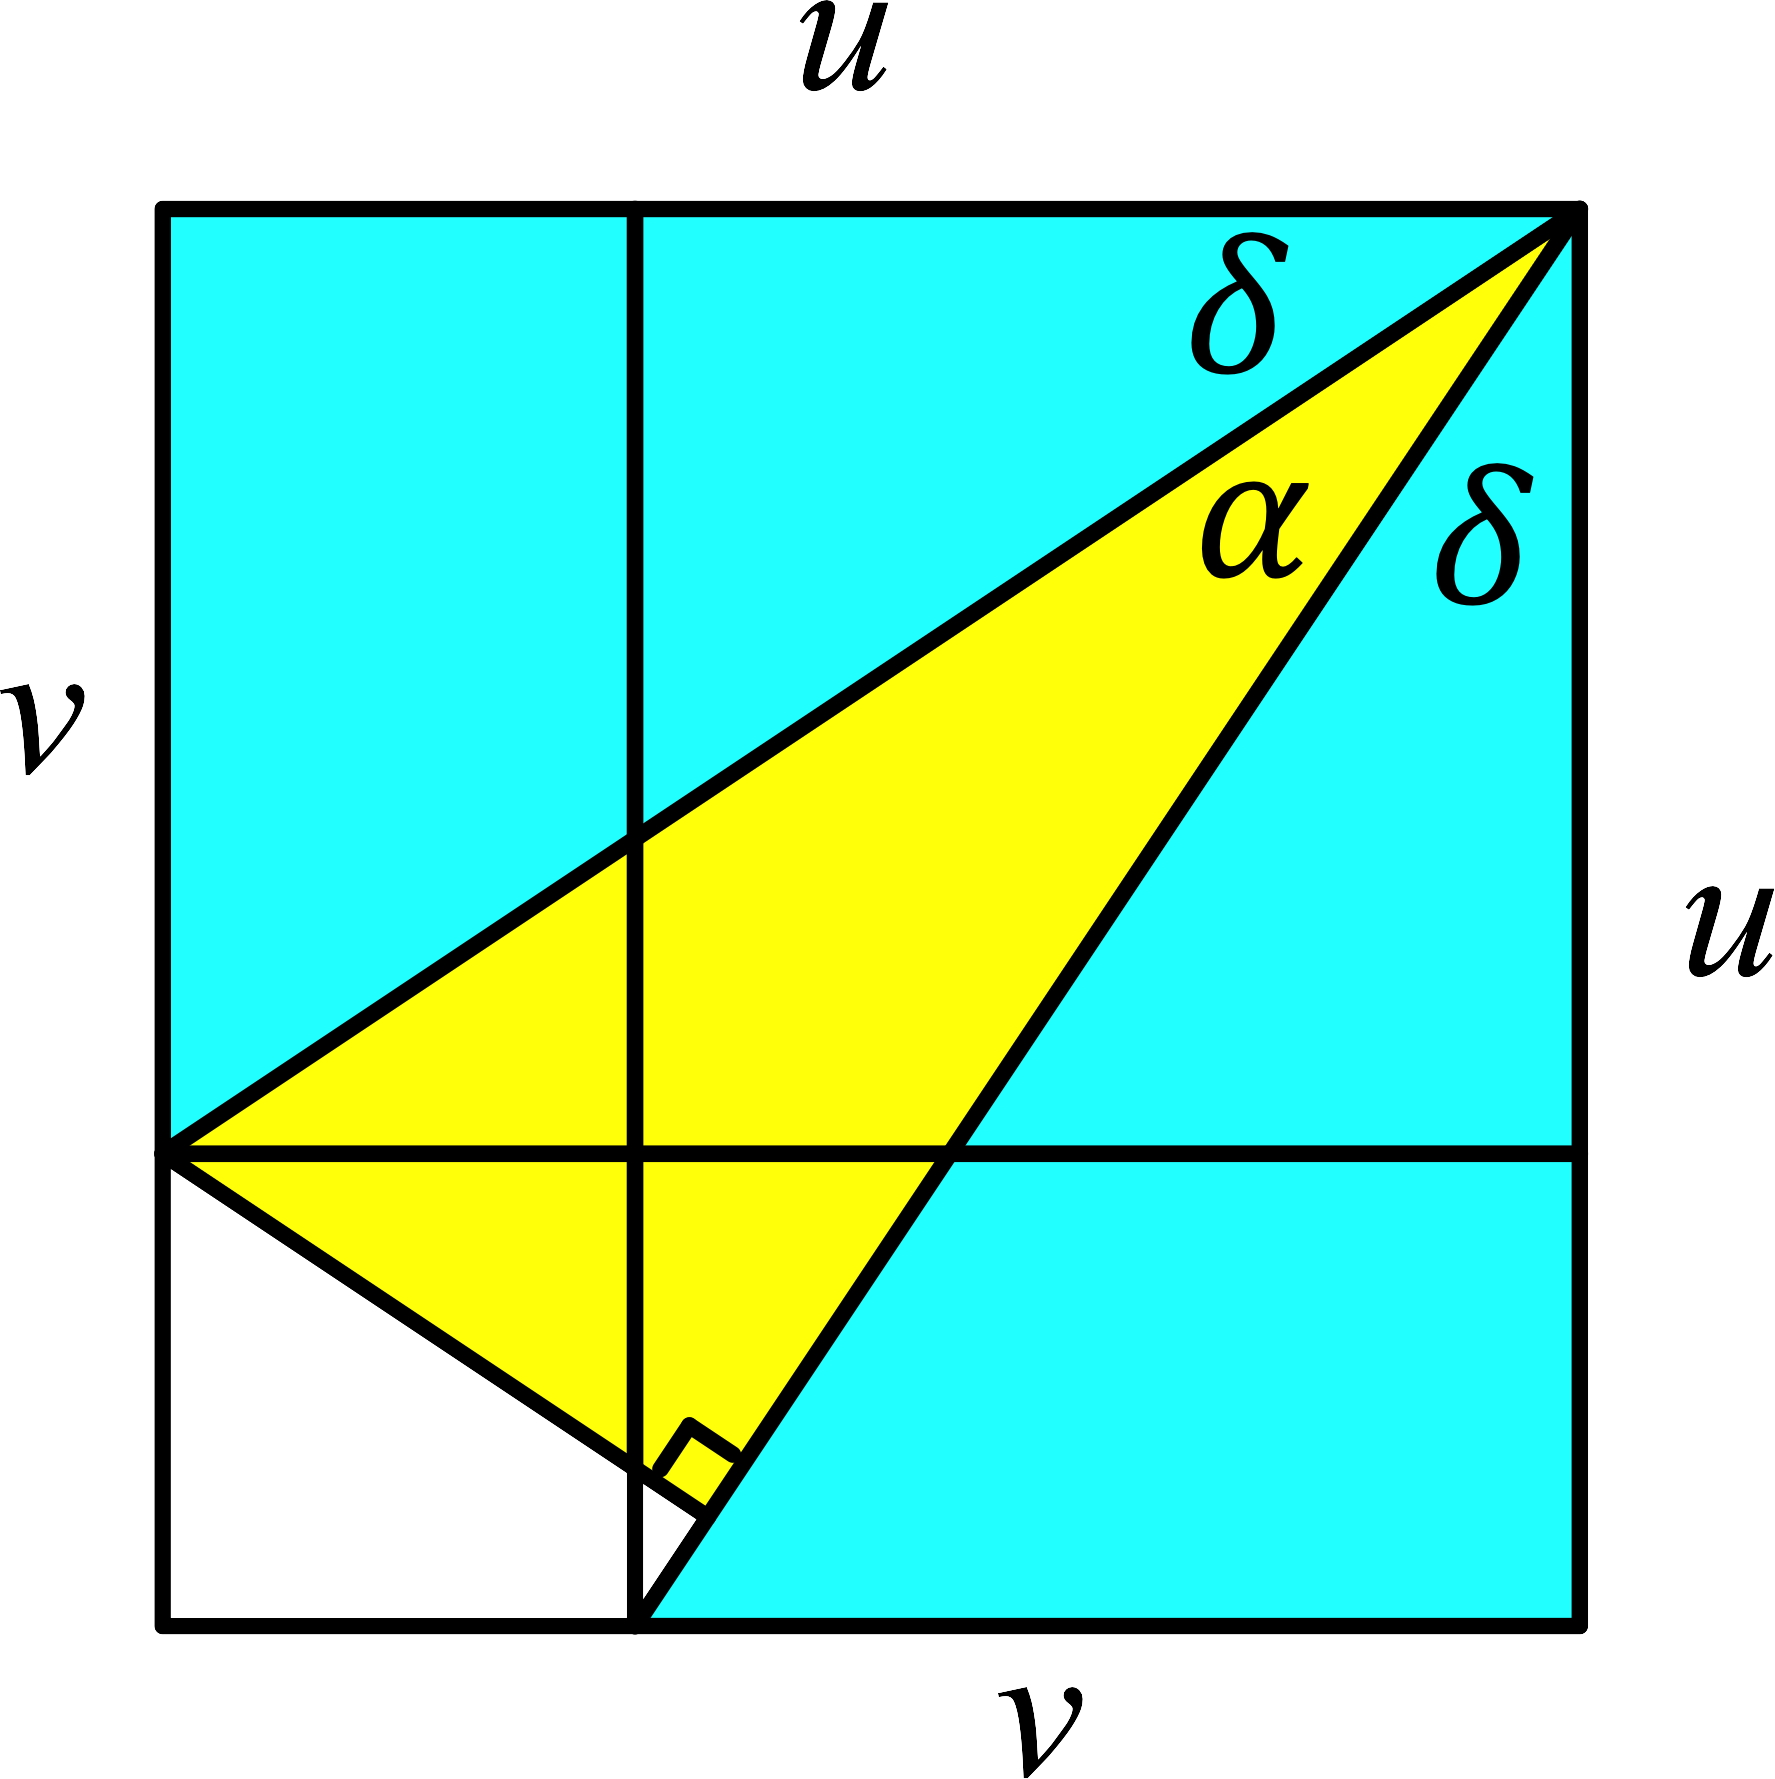 Ein Bild, das Reihe, Dreieck, Diagramm, Farbigkeit enthält.

Automatisch generierte Beschreibung